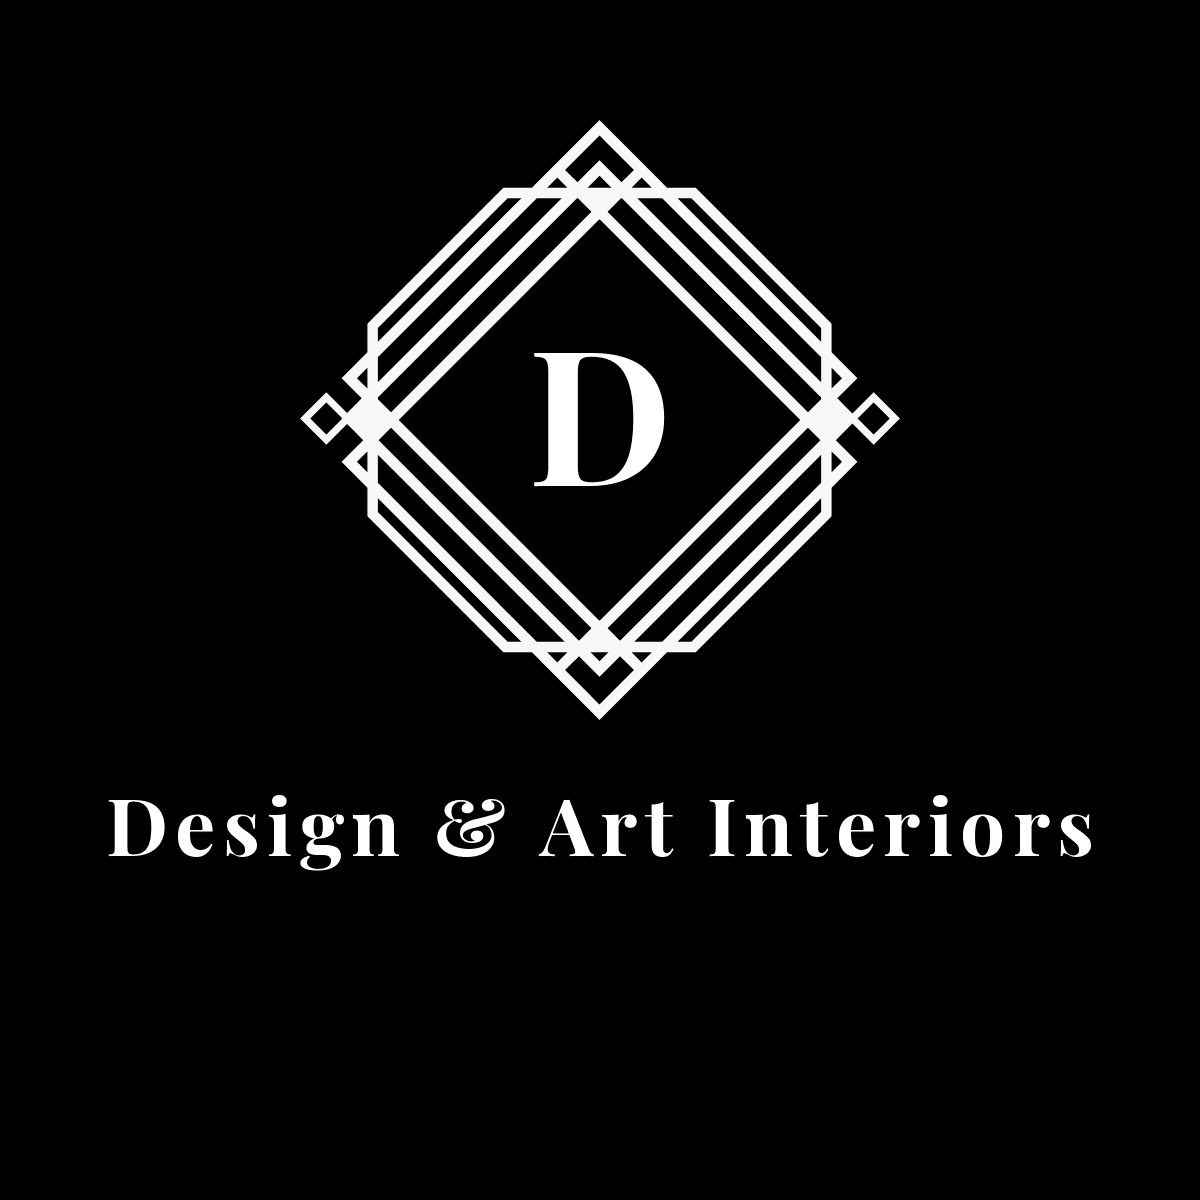 Design and Art Interiors